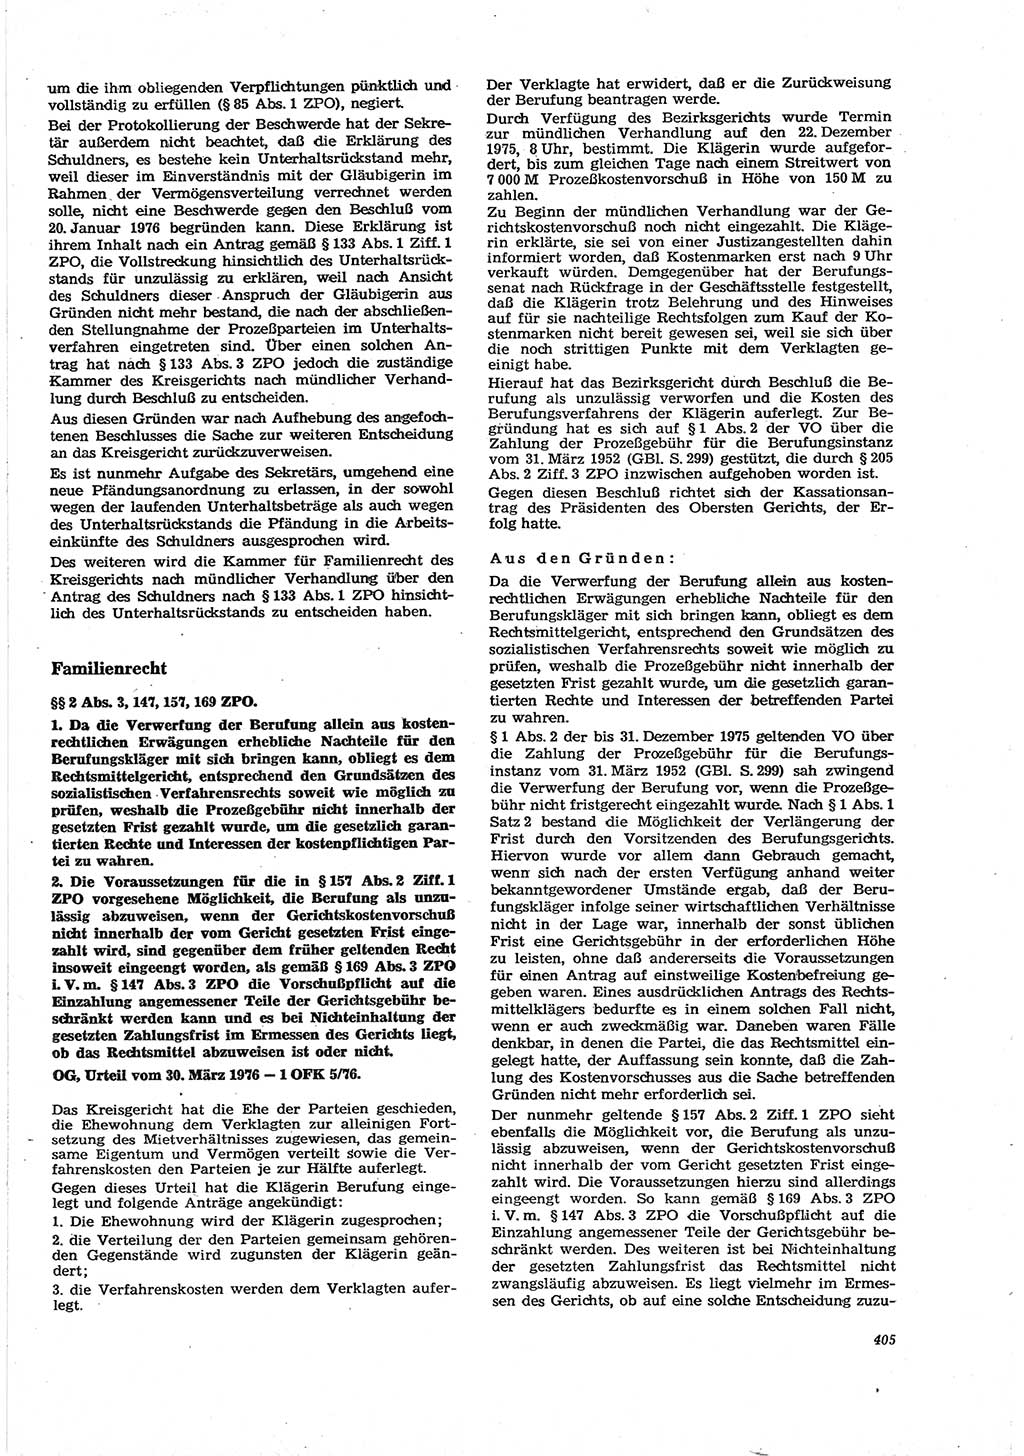 Neue Justiz (NJ), Zeitschrift für Recht und Rechtswissenschaft [Deutsche Demokratische Republik (DDR)], 30. Jahrgang 1976, Seite 405 (NJ DDR 1976, S. 405)